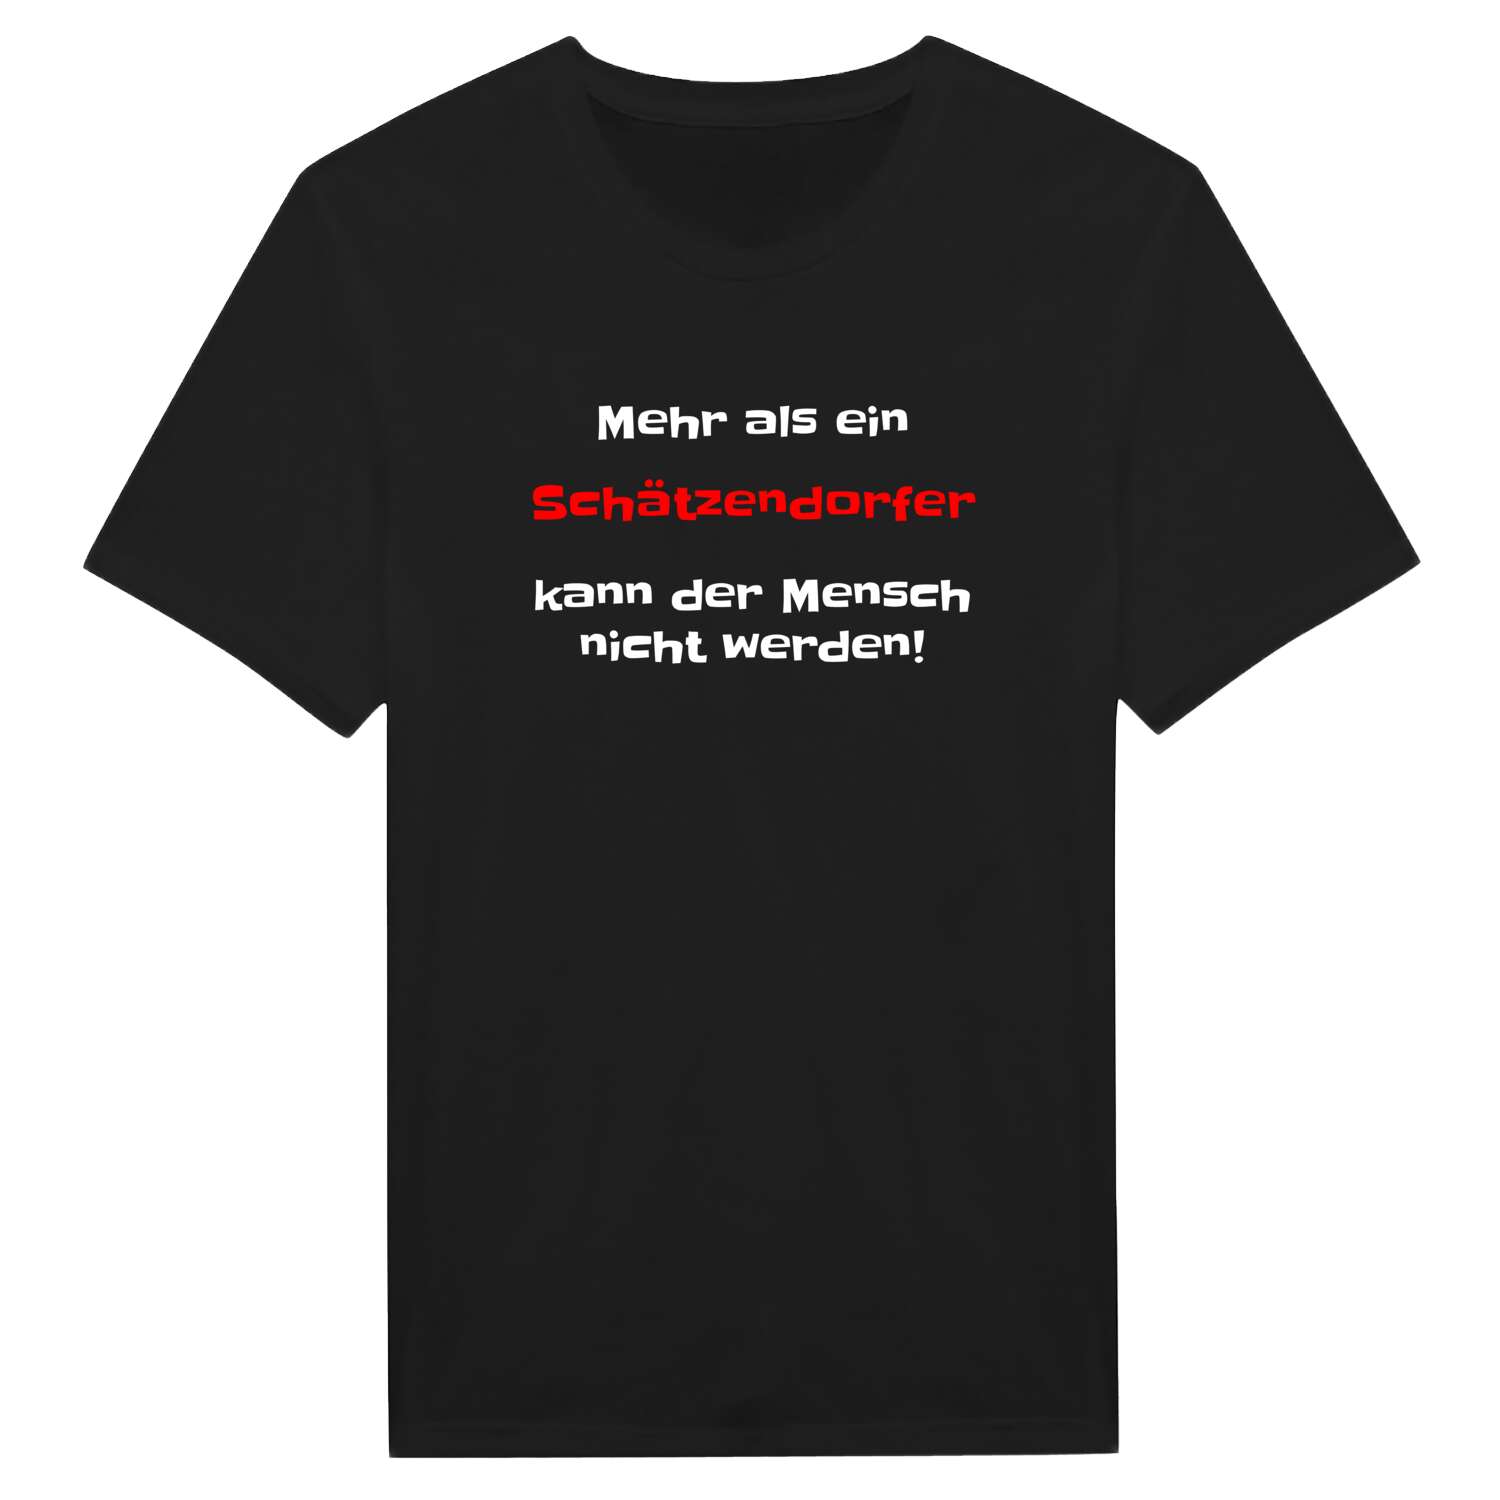 Schätzendorf T-Shirt »Mehr als ein«